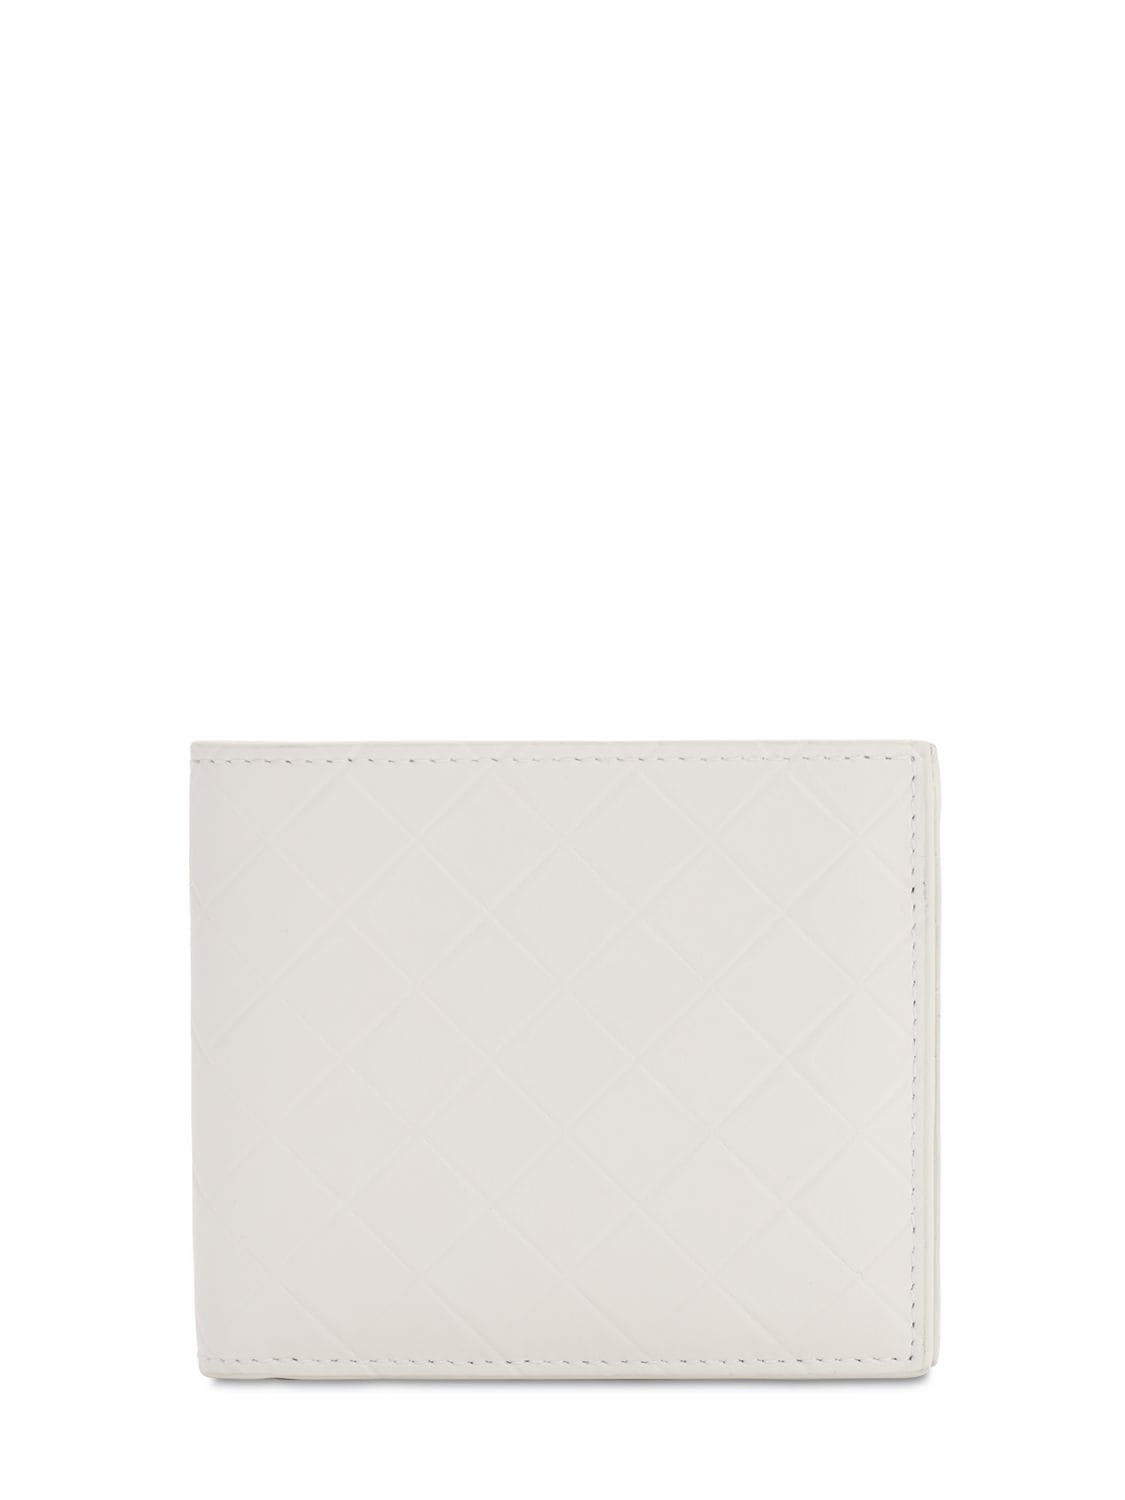 Bottega Veneta Embossed Leather Billfold Wallet In White